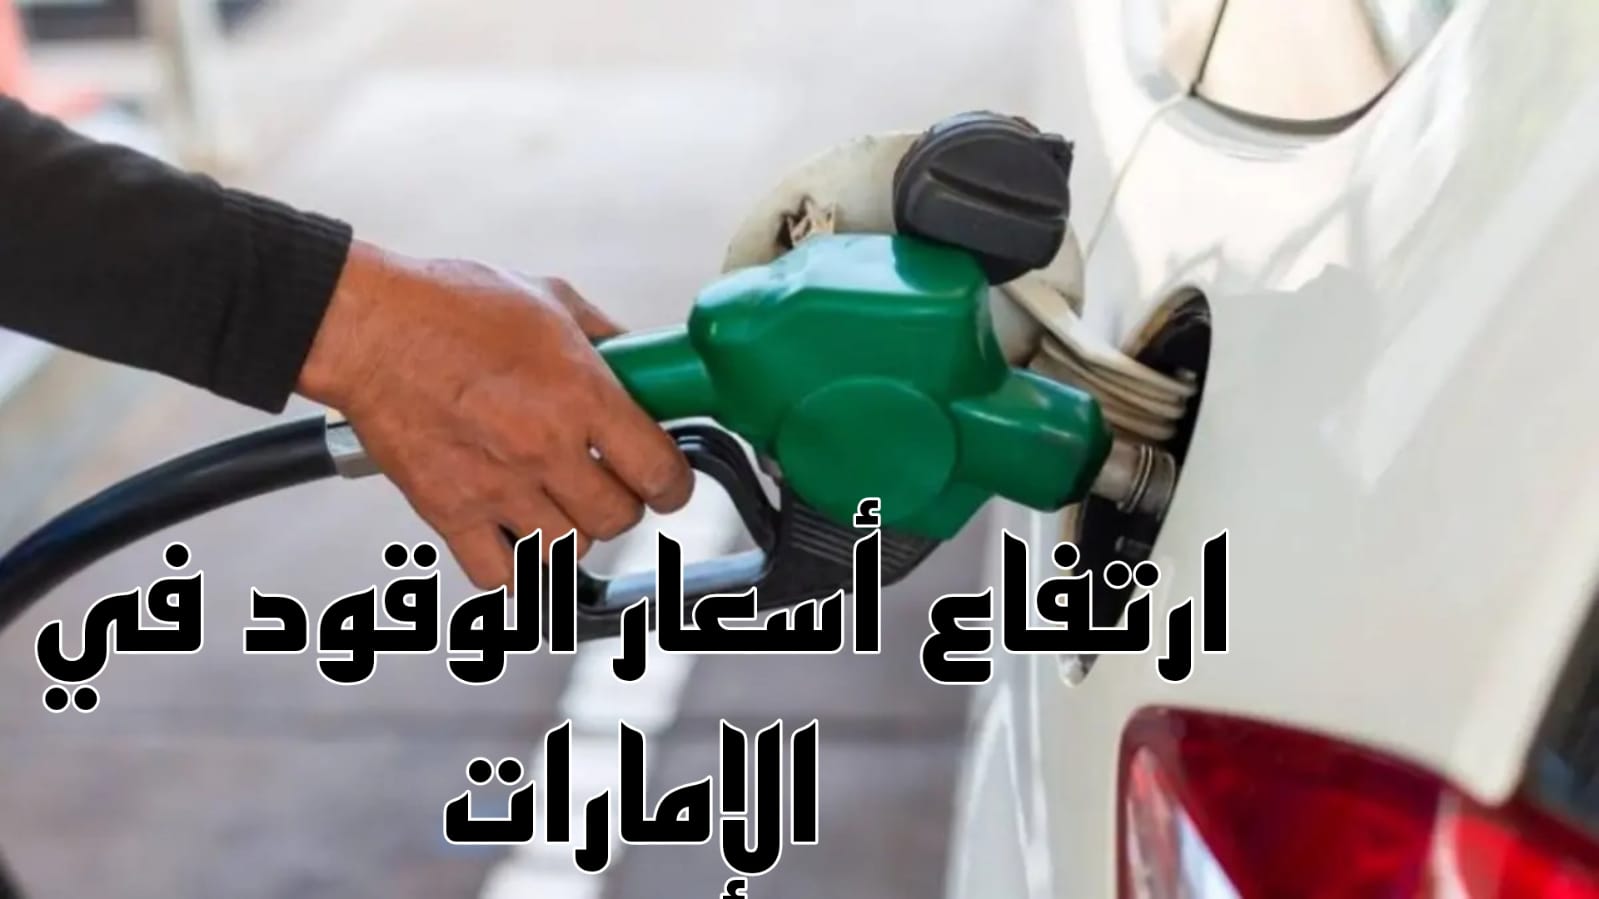 سعر الوقود في الامارات